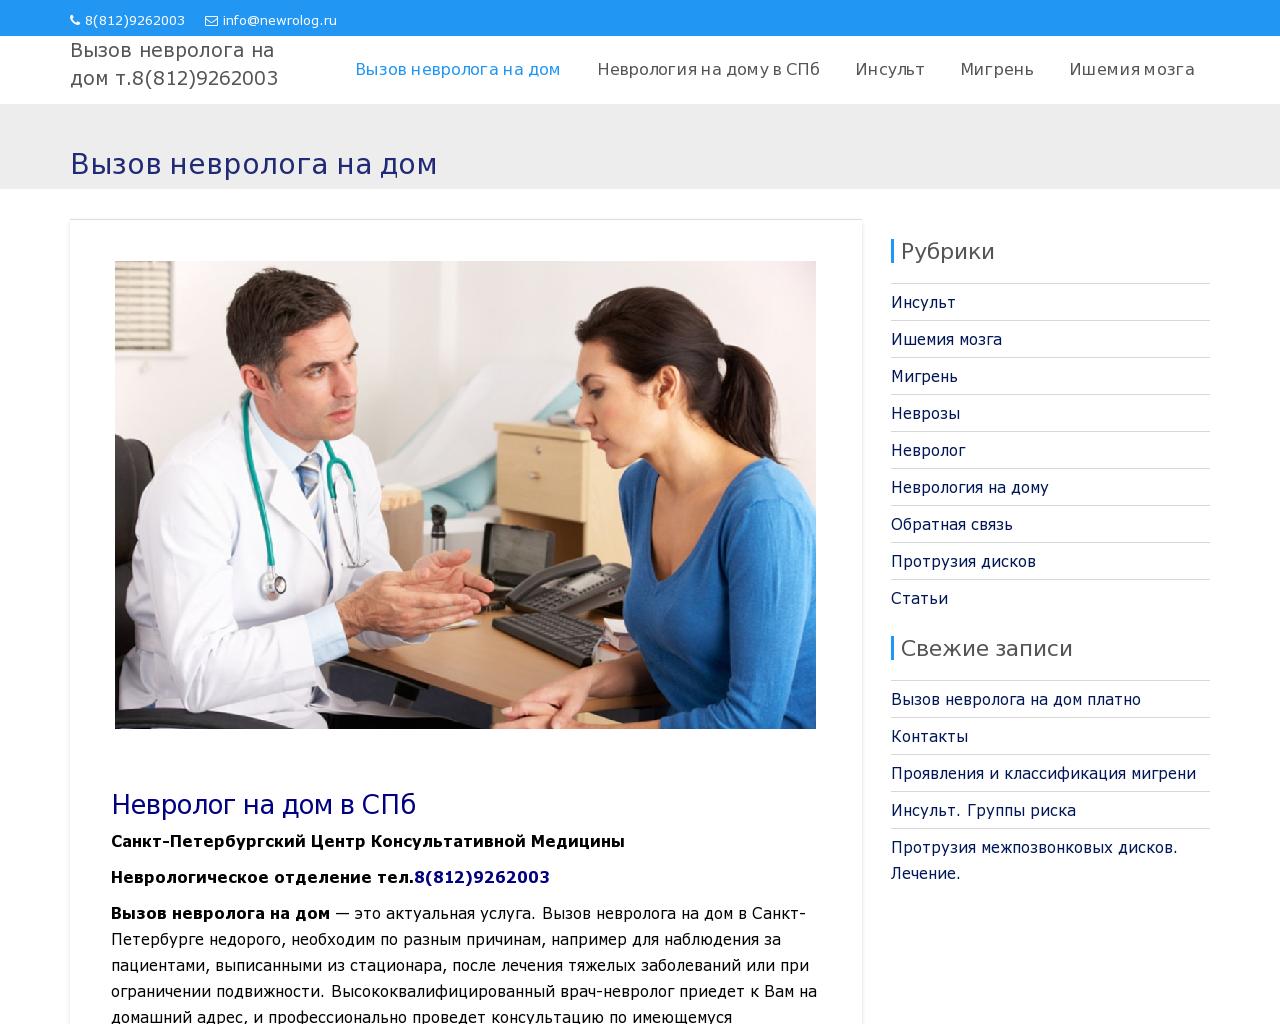 Изображение сайта newrolog.ru в разрешении 1280x1024